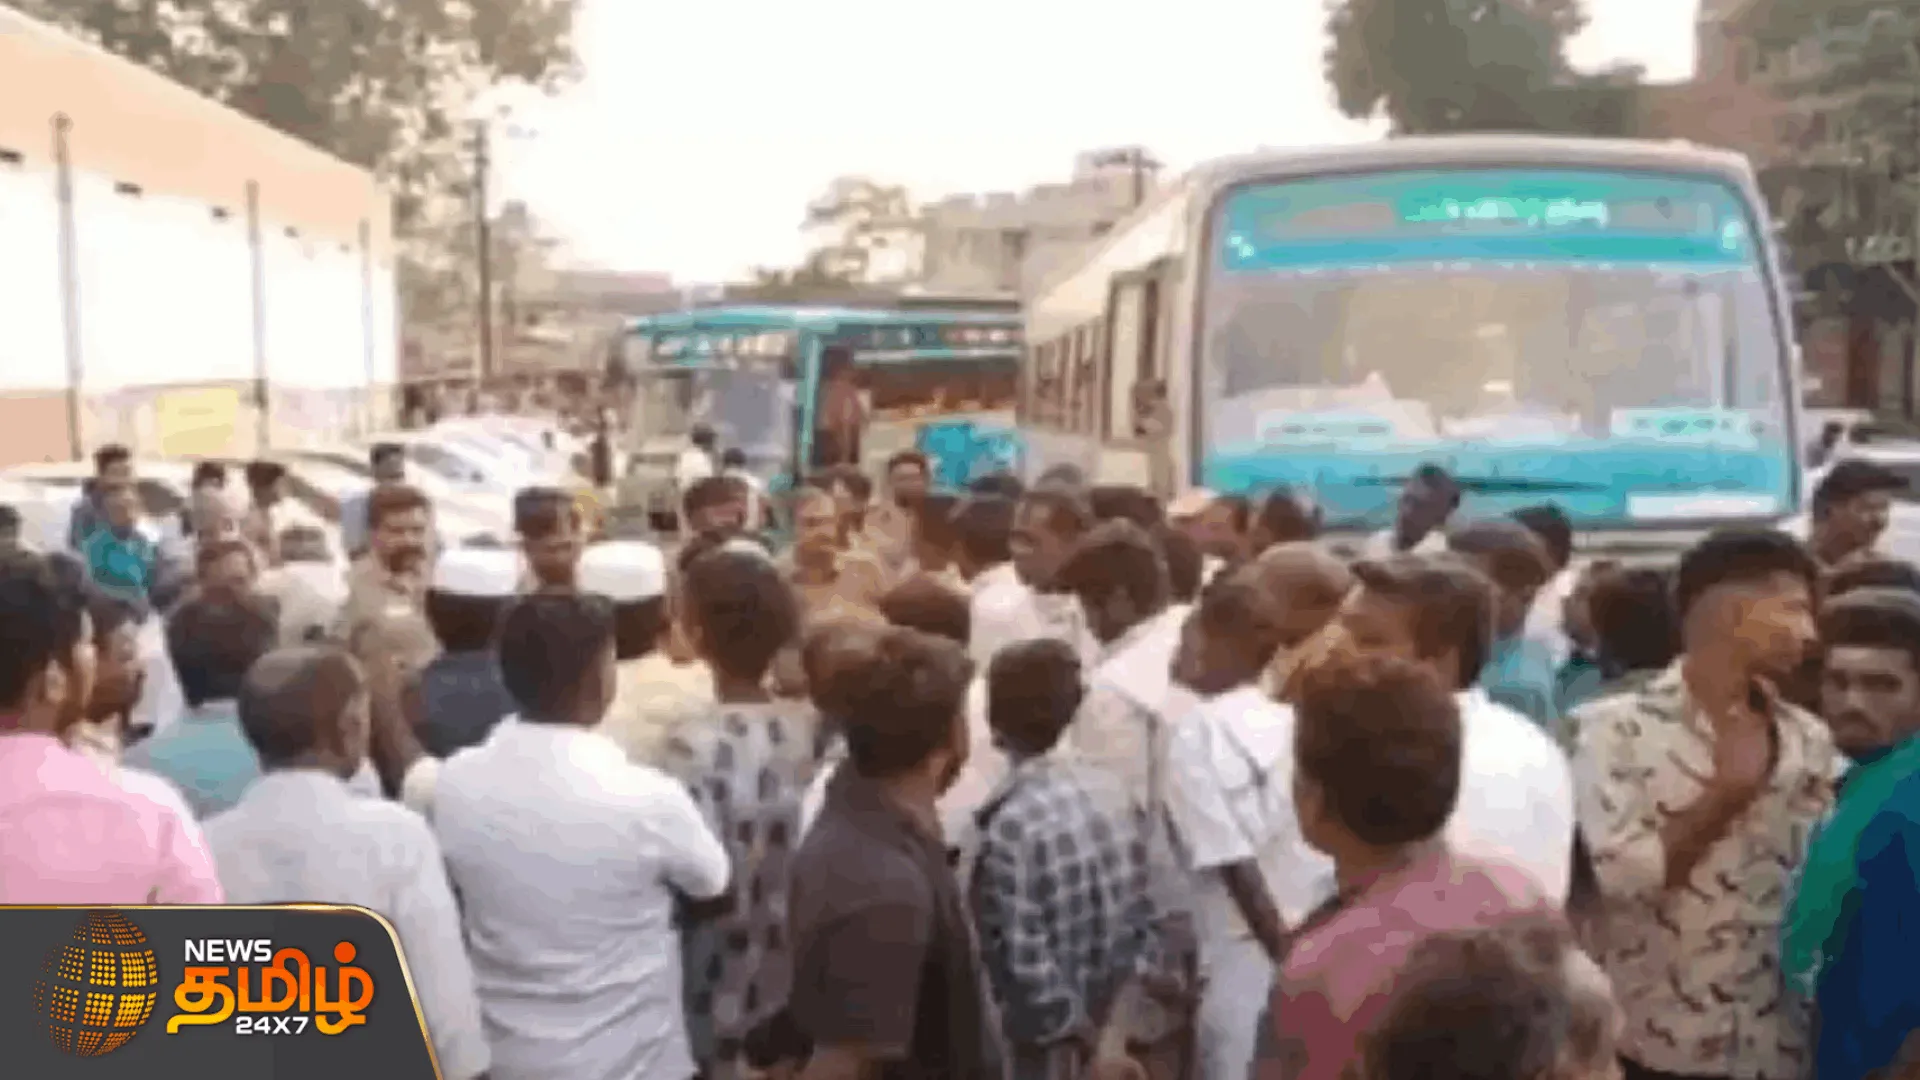  தனியார் பேருந்தை முற்றுகையிட்டதால் பரபரப்பு  பேச்சுவார்த்தை நடத்தி தனியார் பேருந்தை மீட்ட போலீசார் |  Riot due to blockade of private bus